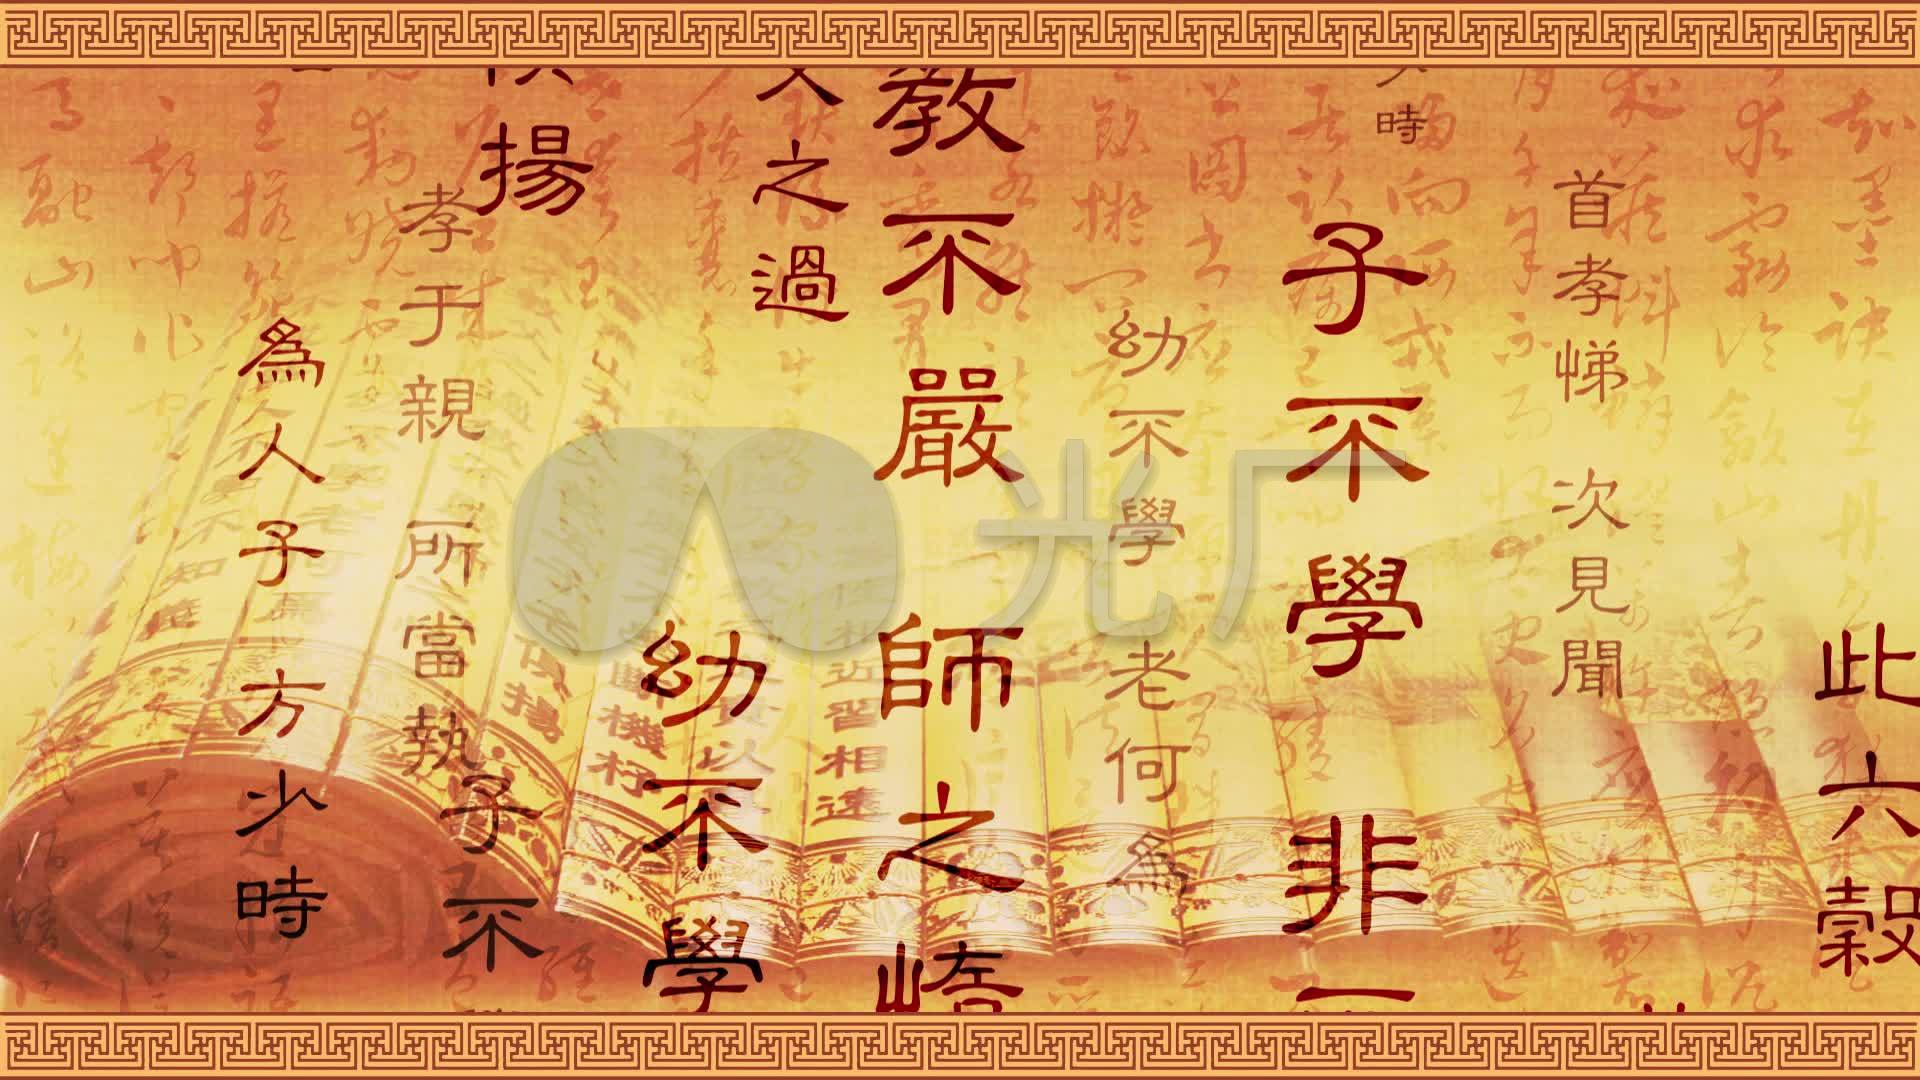 杭州净慈寺举办“卷舒自如”发现佛经之美经折装古代经书展